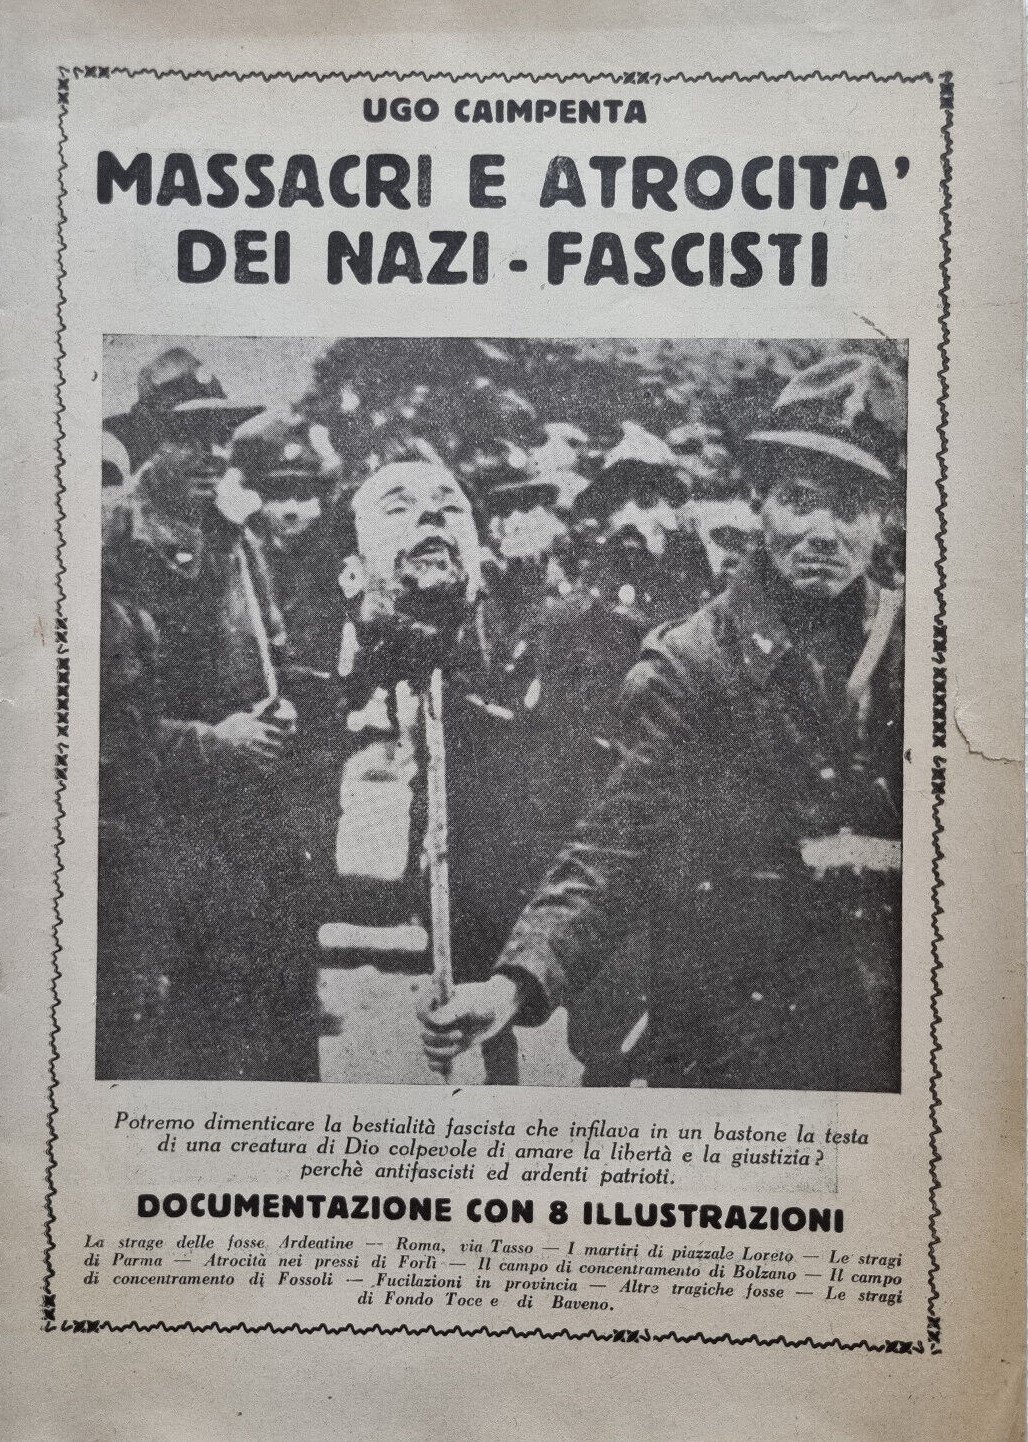 Gian Dàuli: il pioniere dell’instant book in Italia e il suo scomodo “Massacri e atrocità dei nazi-fascisti”